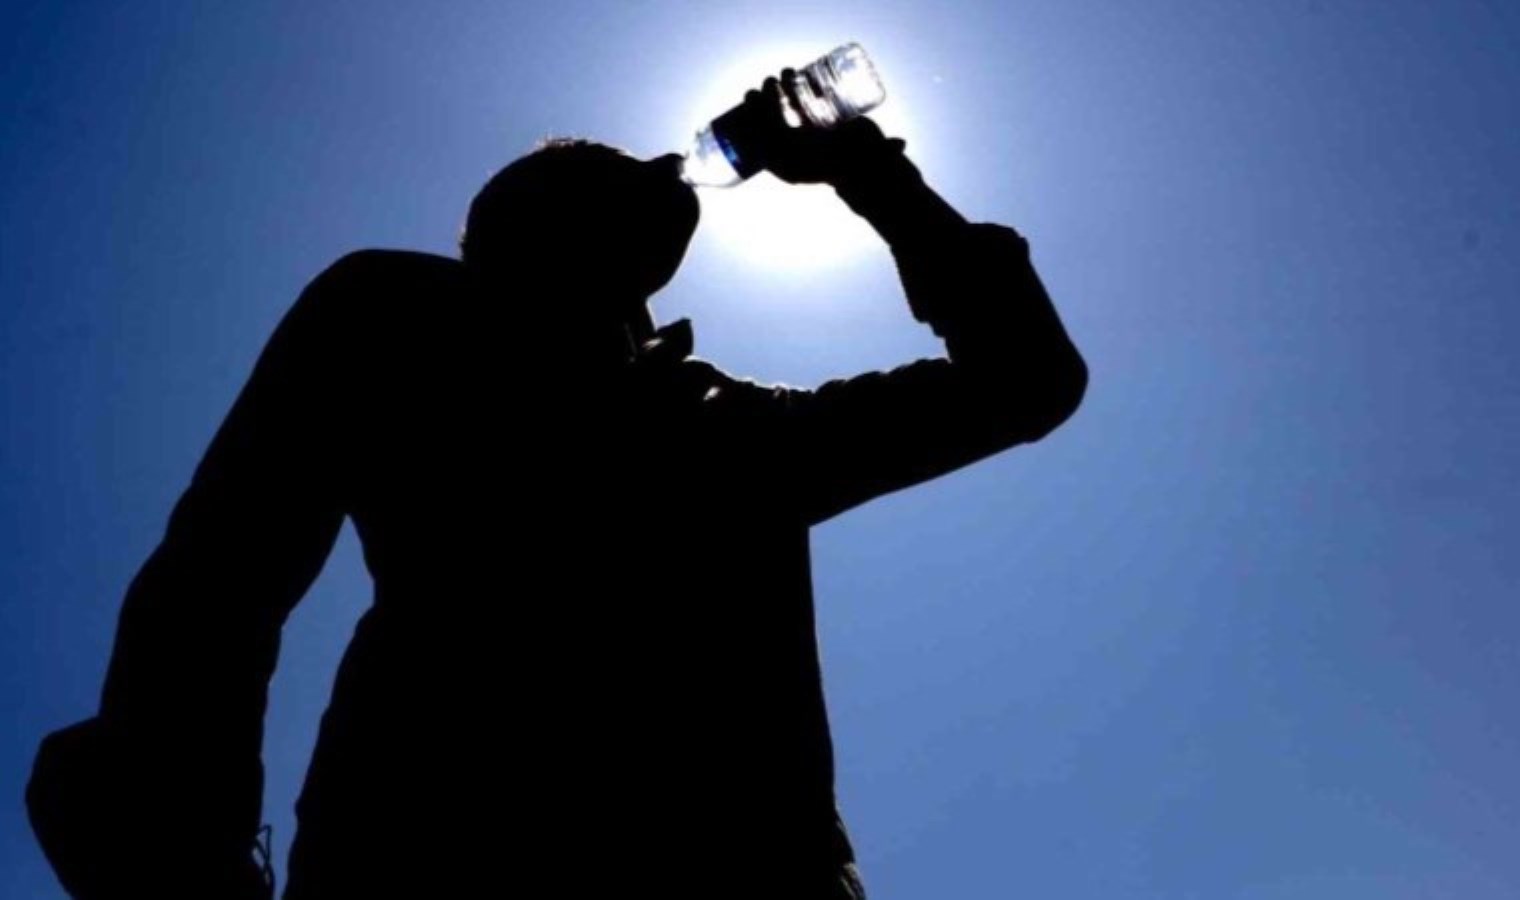 Kavurucu sıcaklarda sıvı kaybına karşı ‘2 buçuk litre su tüketilmeli’ uyarısı